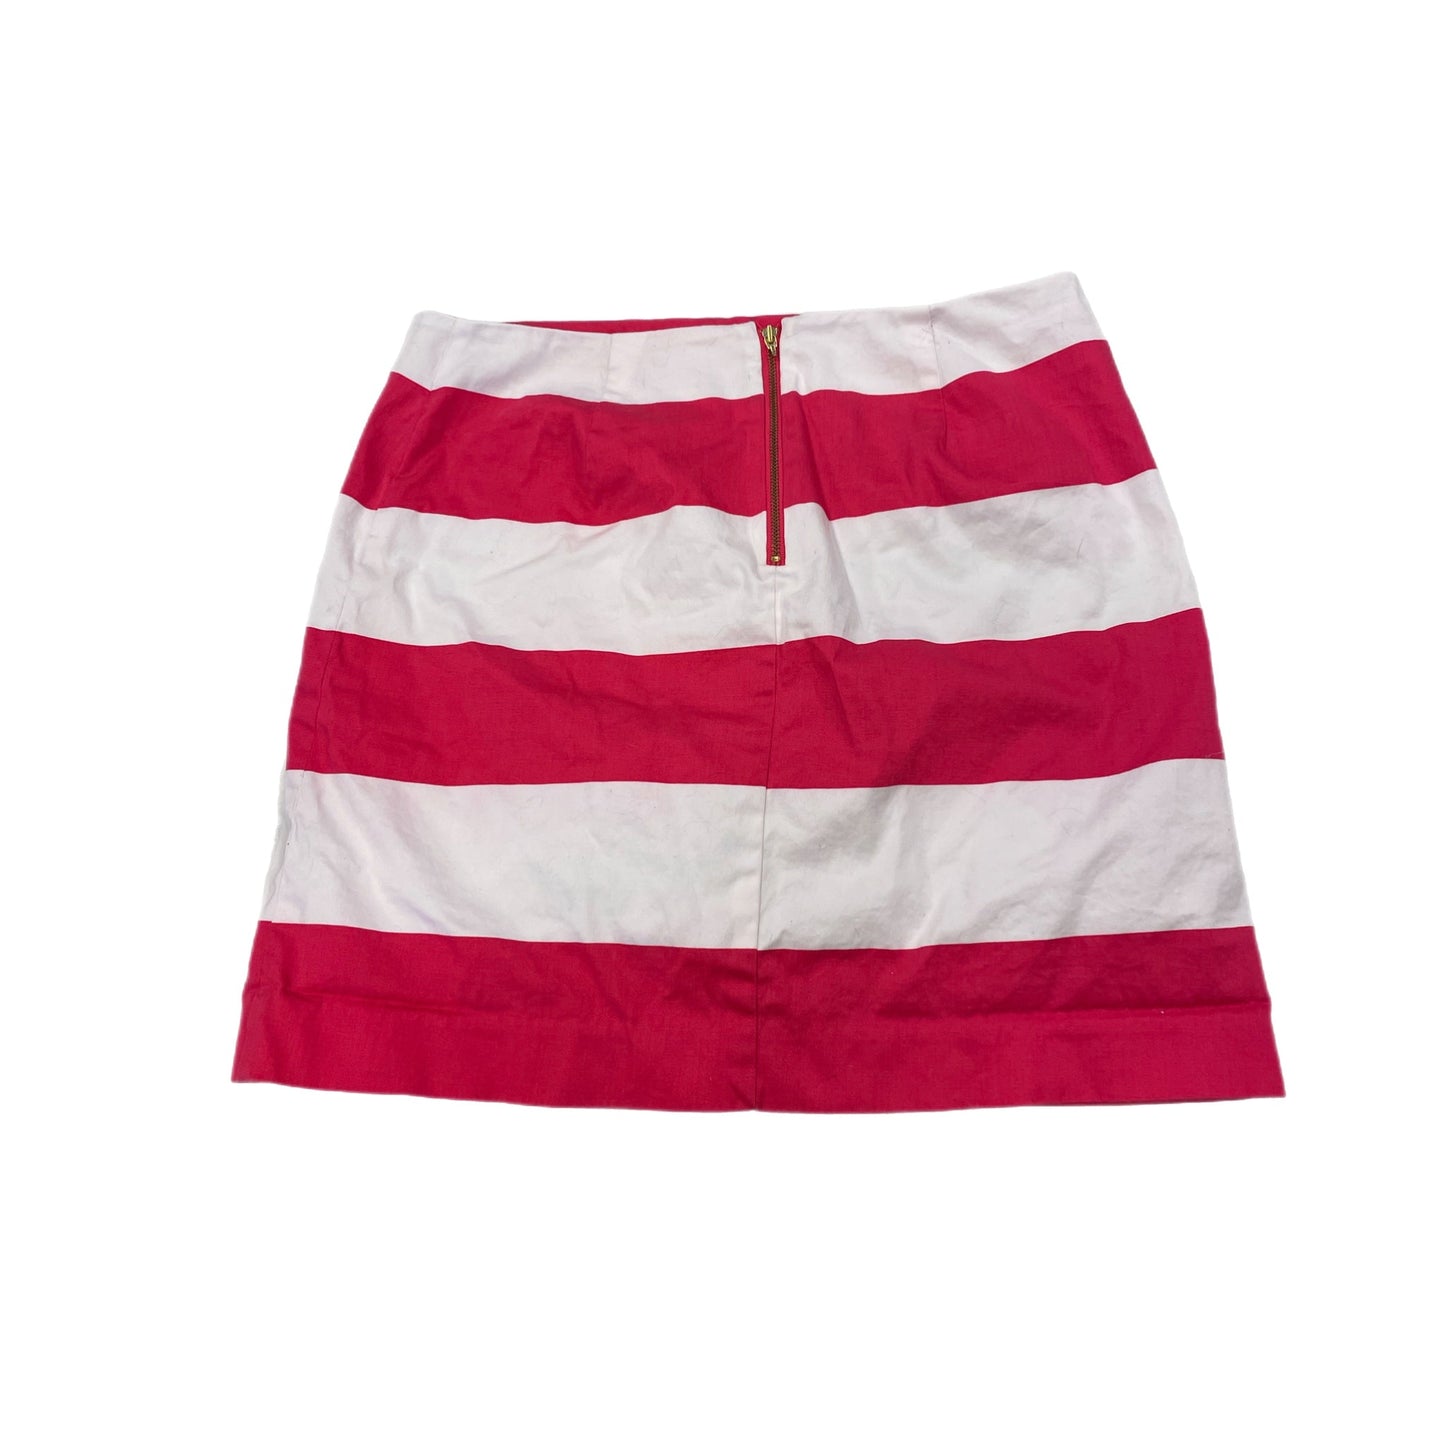 Skirt Mini & Short By Vineyard Vines  Size: 4